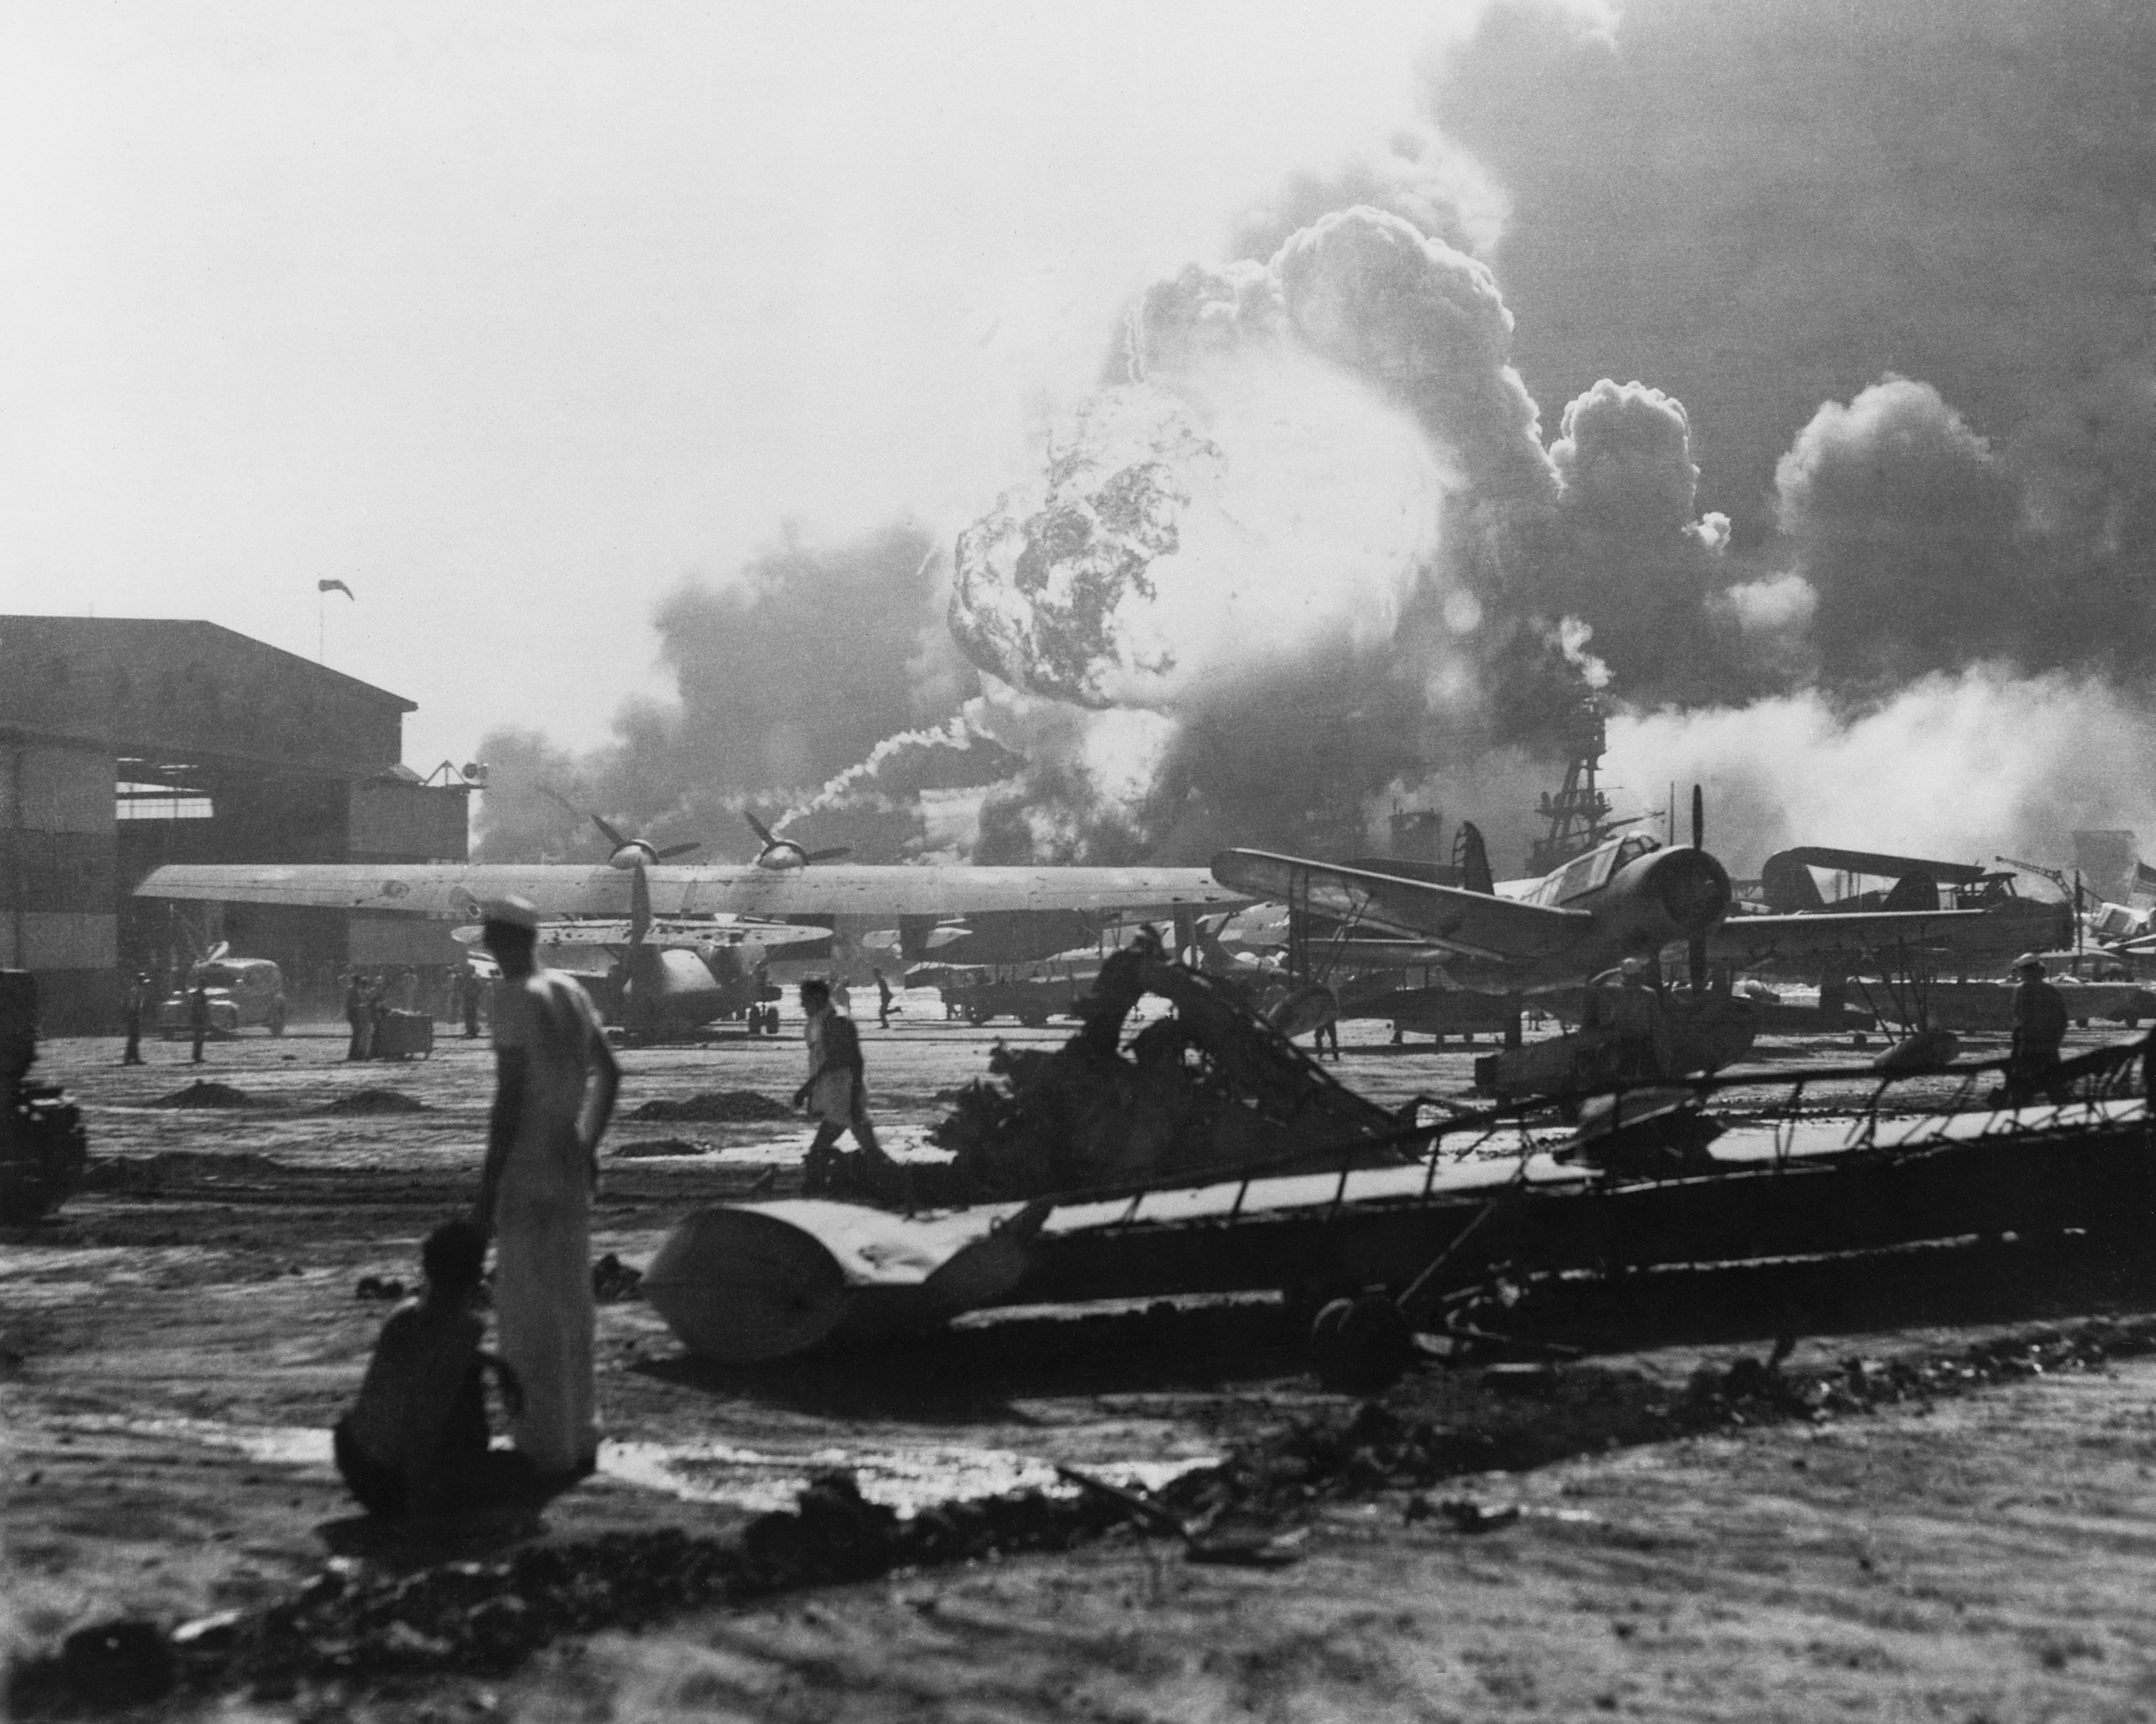 Explosión en Pearl Harbor vista desde Hickam Field.  Ataque japonés a Pearl Harbor, el 7 de diciembre de 1941. Hickam Field sufrió grandes daños y pérdidas de aviones, con 189 personas muertas y 303 heridas.  (BSLOC_2013_11_138)